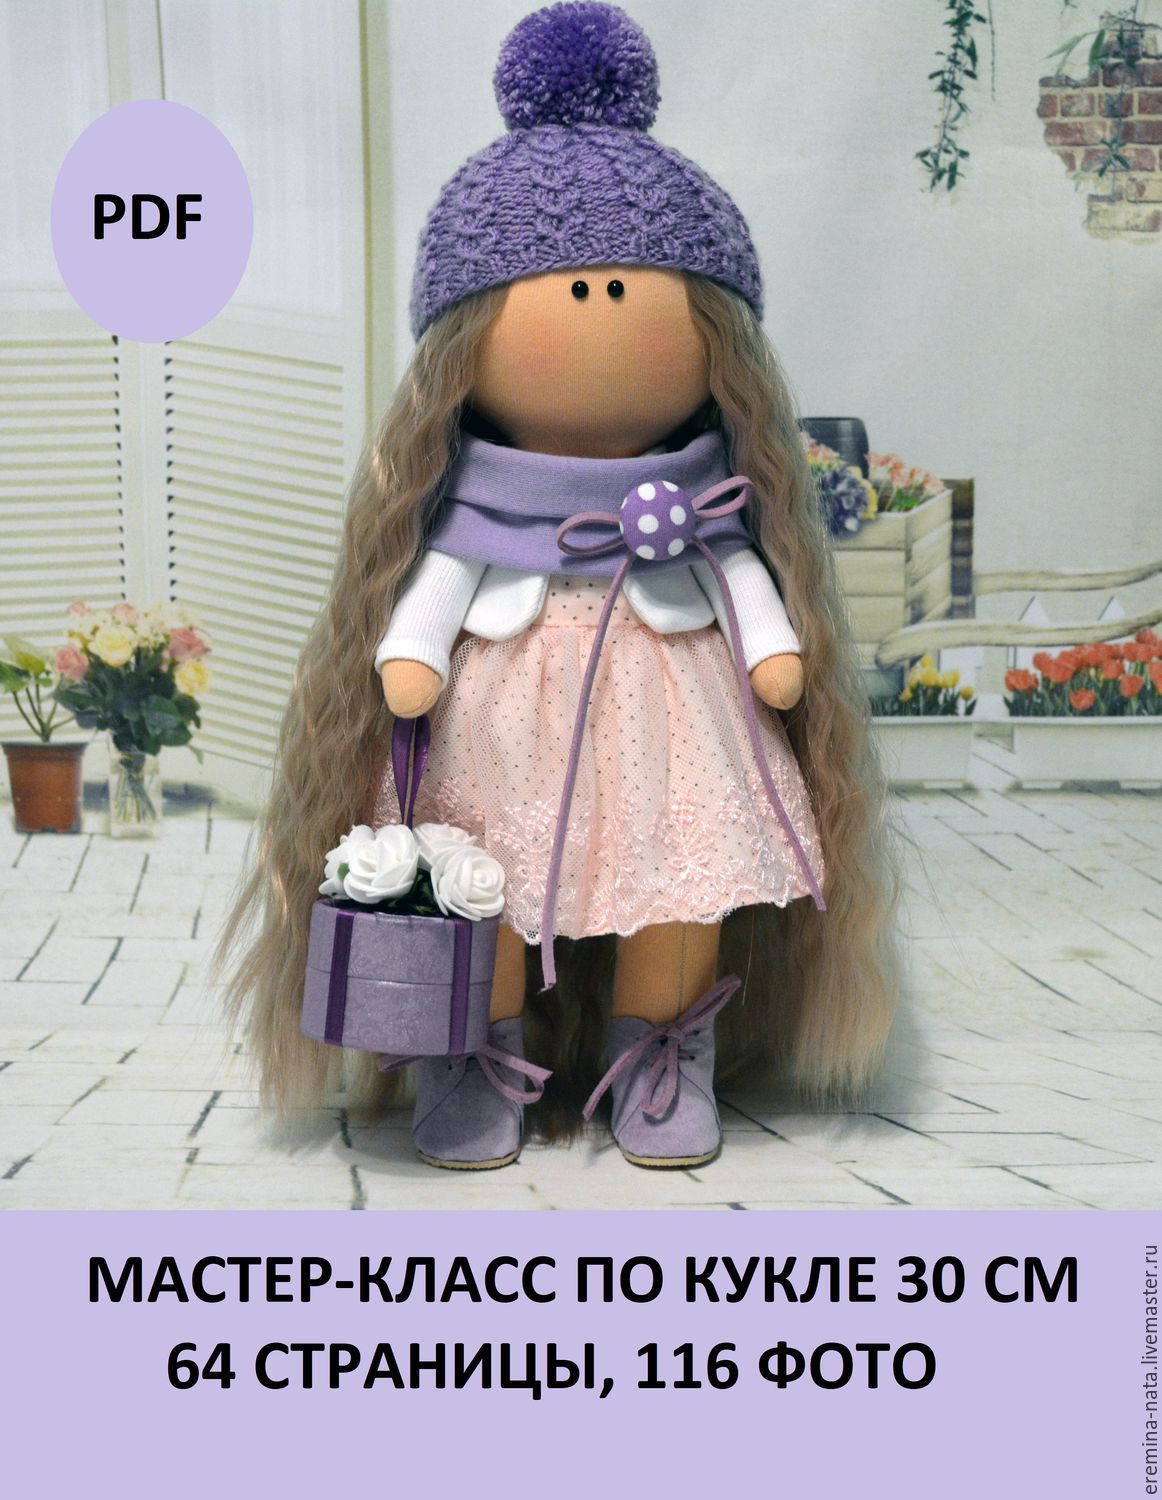 Онлайн МК и совместные пошивы кукол. Материалы для кукол и мишек Тедди : Рукоделие